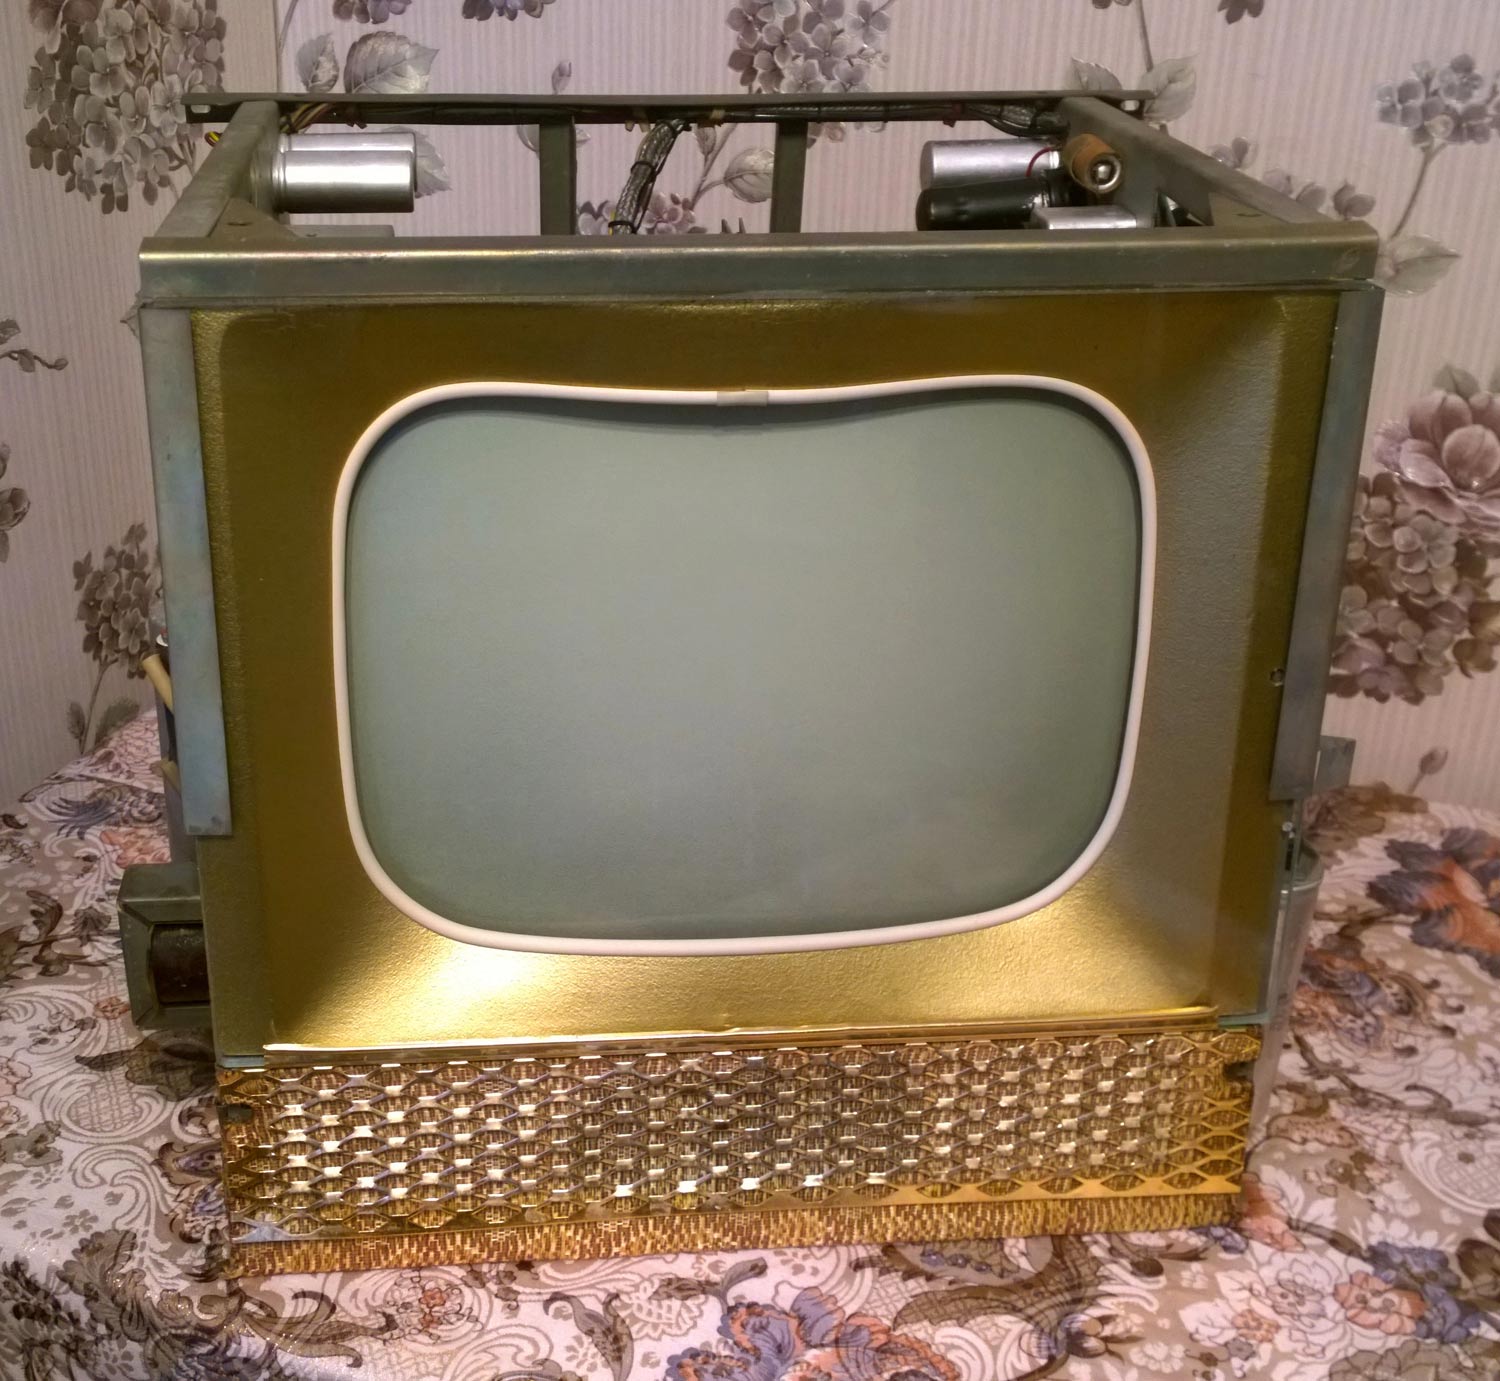 Телевизор рекорд черный. Телевизор рекорд 345. Телевизионный приёмник янтарь 1956. Телевизор рекорд 1956. Телевизор рекорд ц 275.